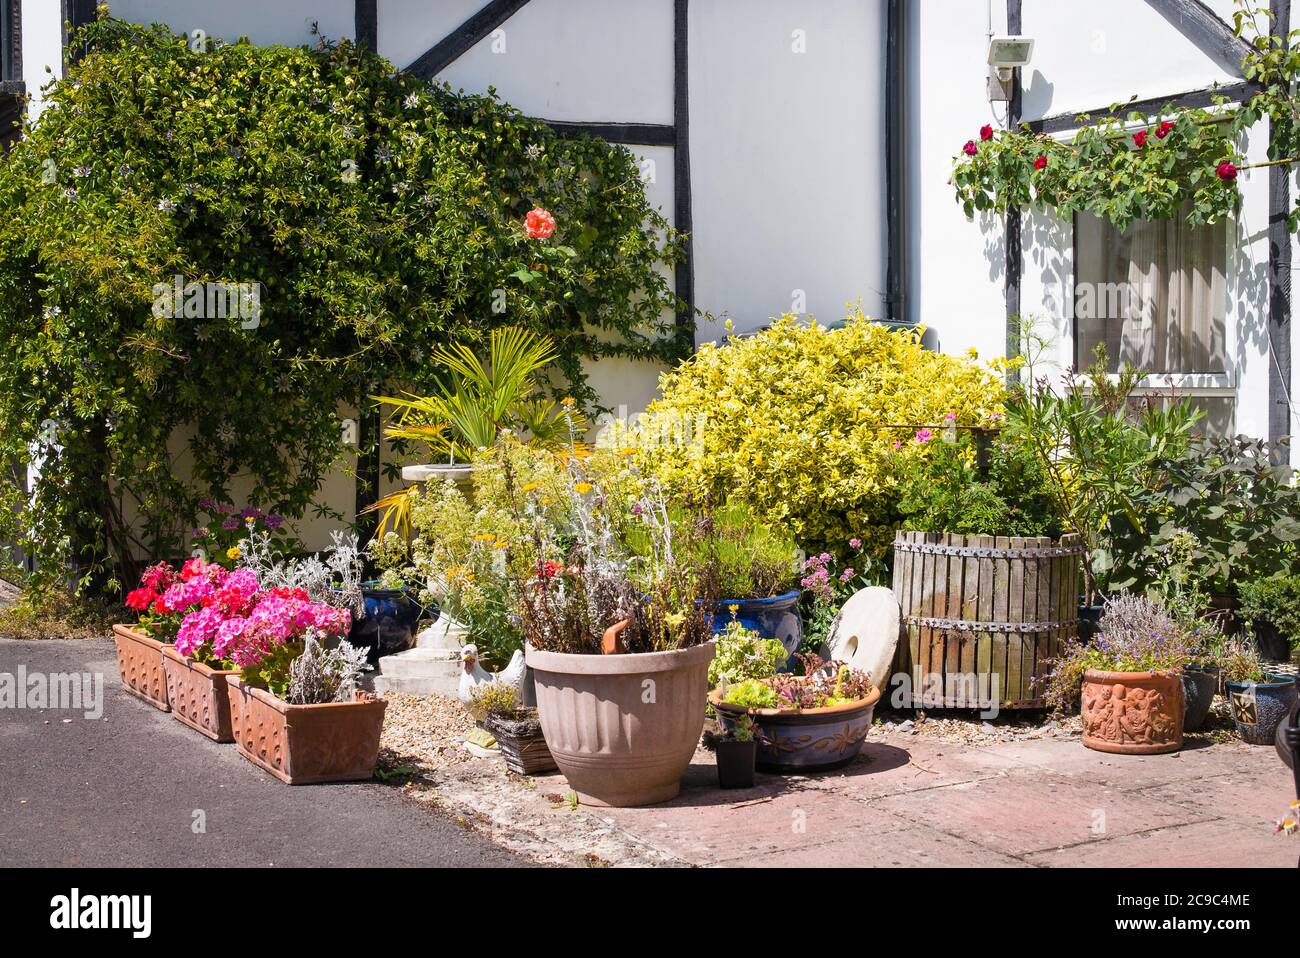 Un piccolo patio giardino accanto a un vecchio fienile convertito in un giardino inglese nel mese di luglio Foto Stock